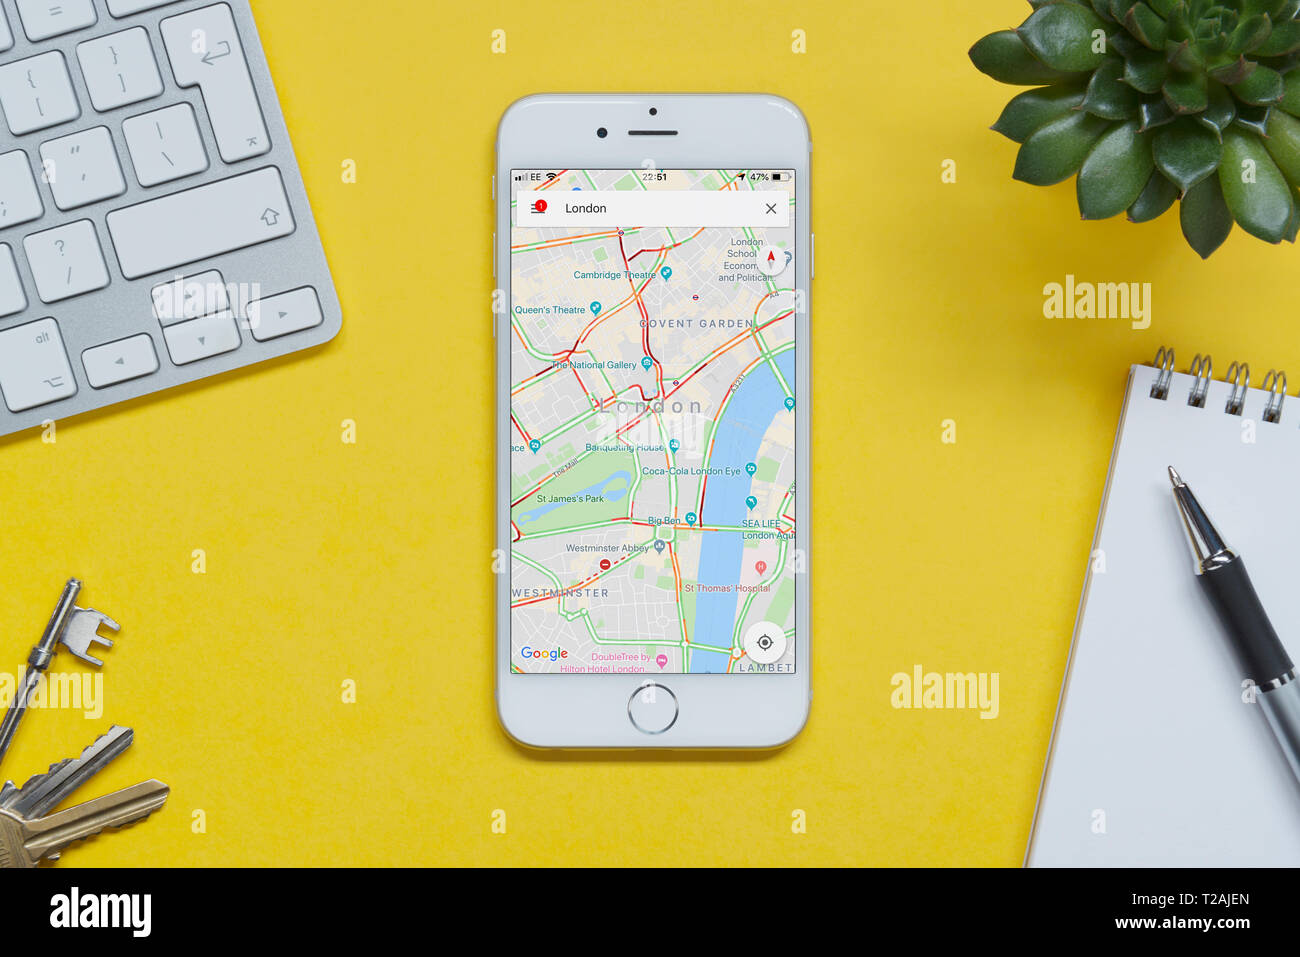 Un iPhone montrant le site Google Maps repose sur un fond jaune table avec un clavier, les touches, le bloc-notes et des plantes (usage éditorial uniquement). Banque D'Images